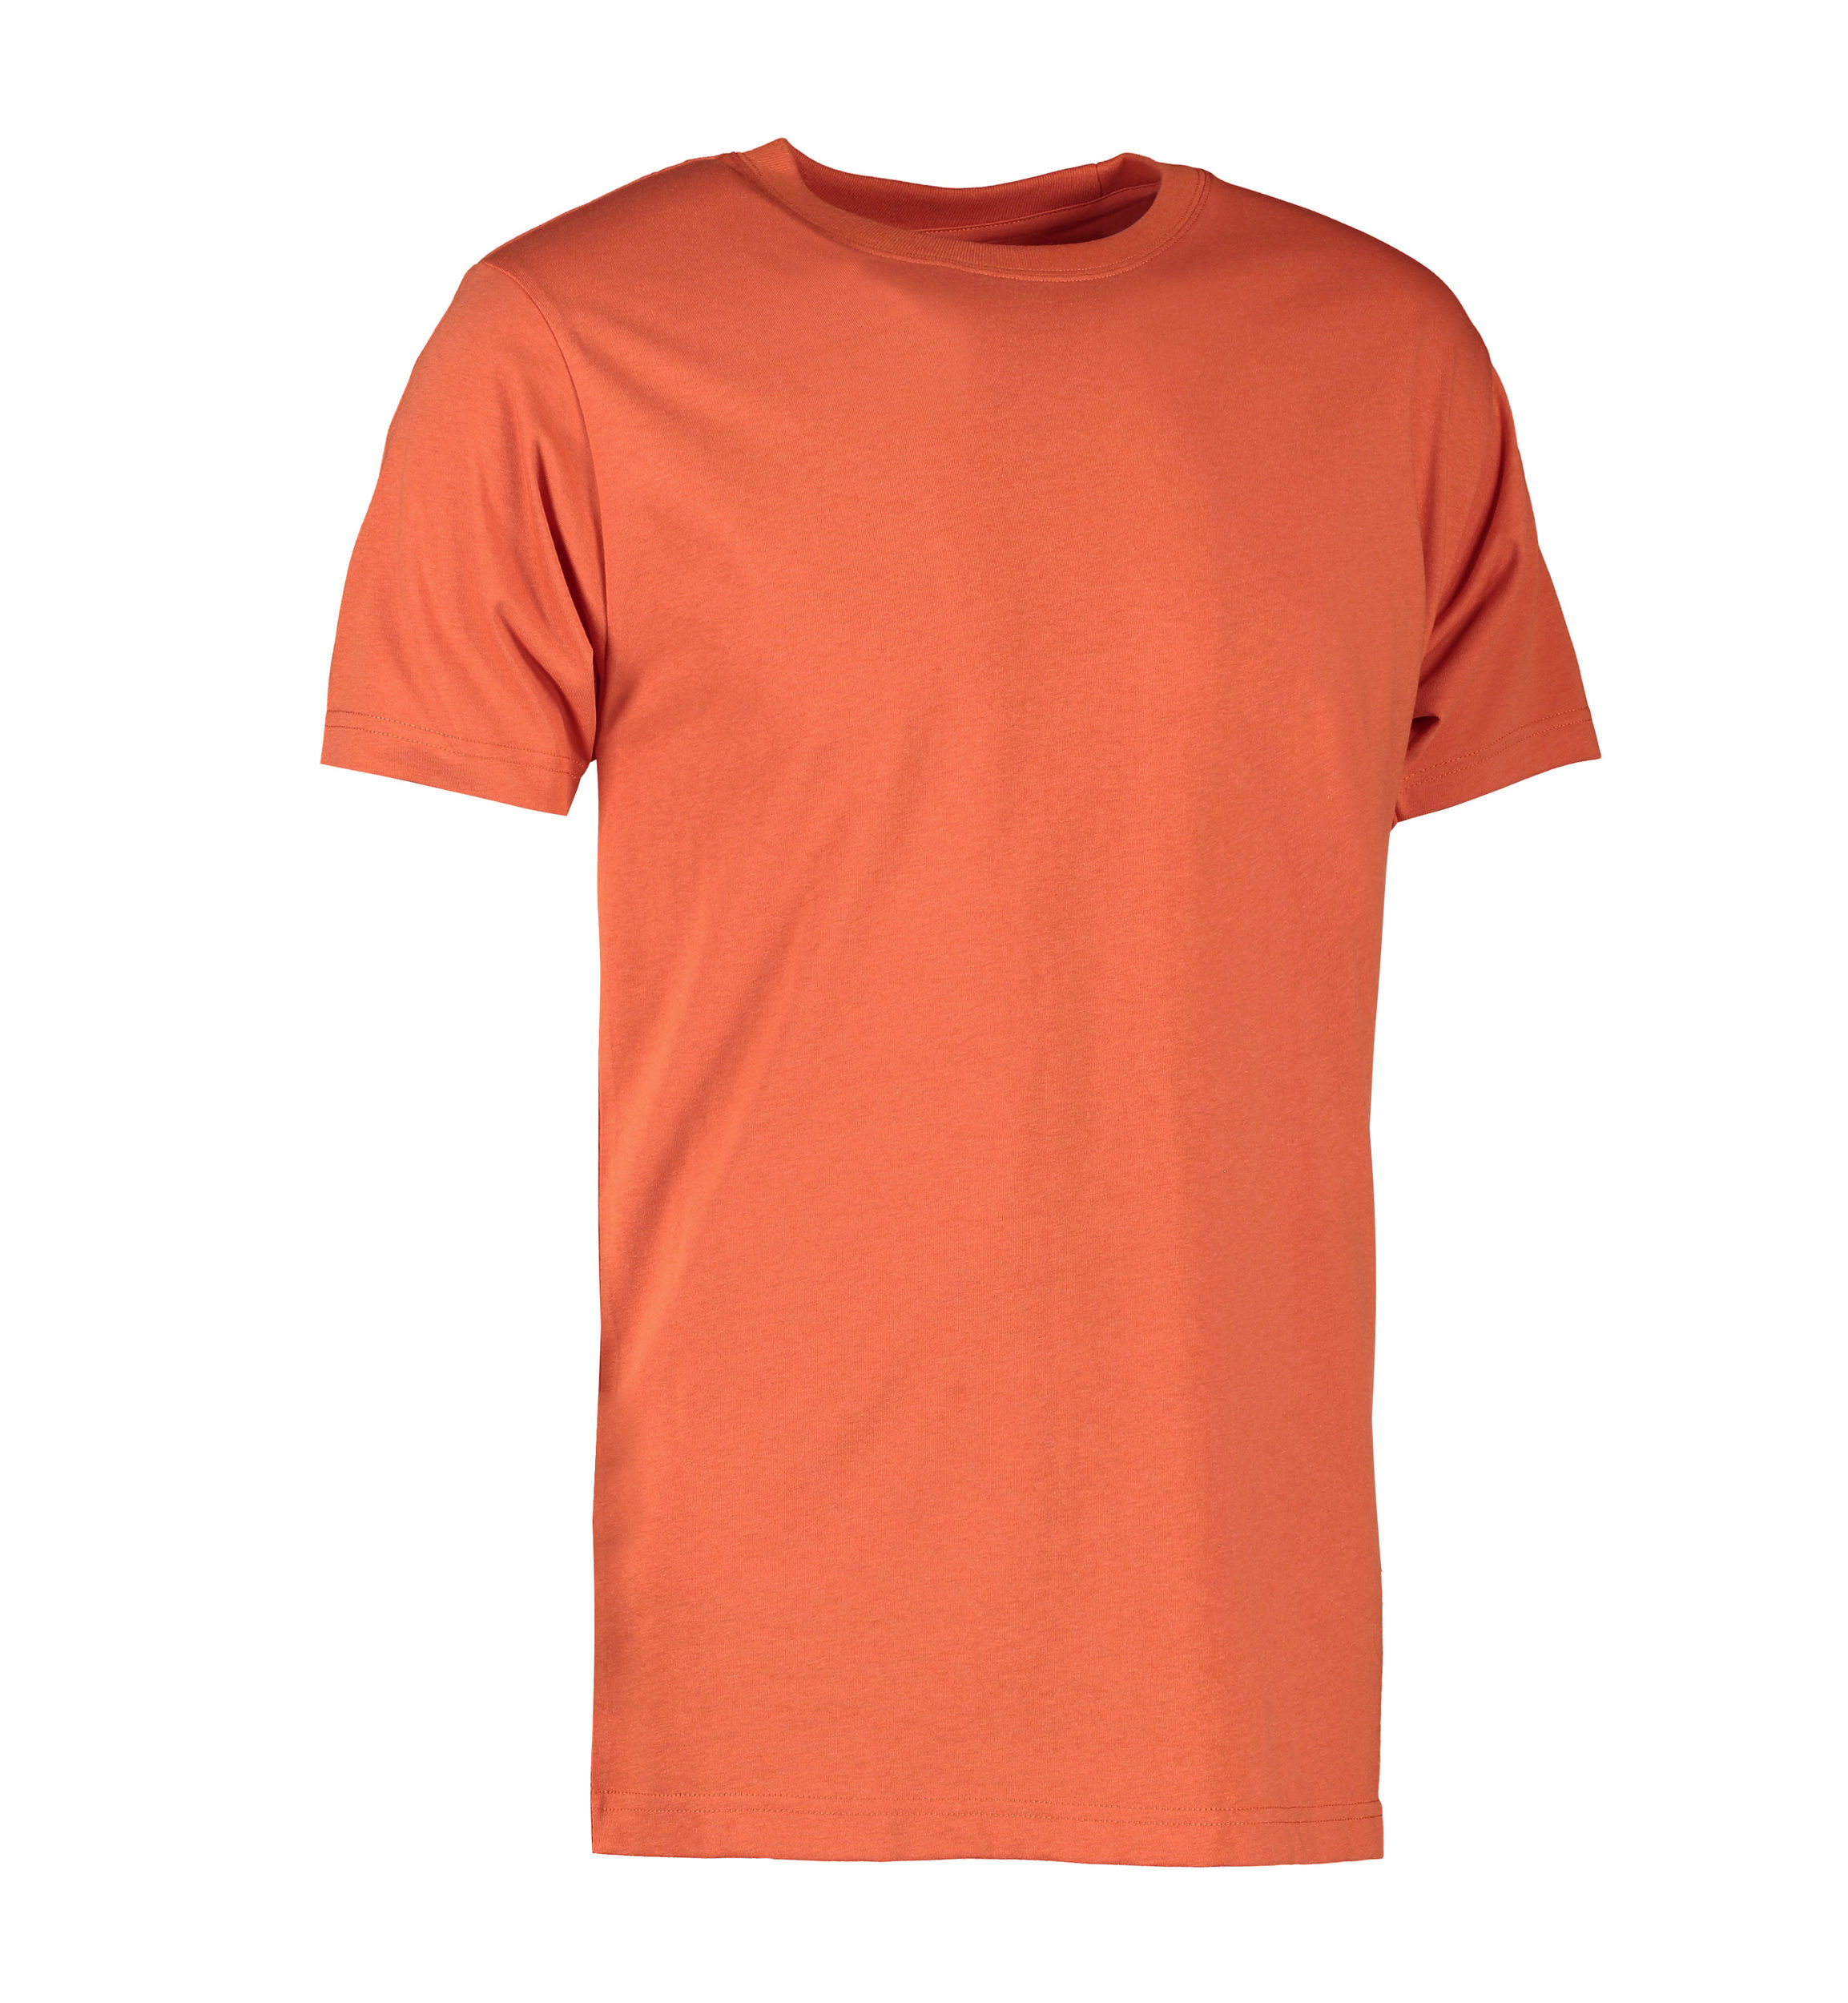 Billede af Koral farvet slidstærk t-shirt til mænd - 2XL hos Sygeplejebutikken.dk